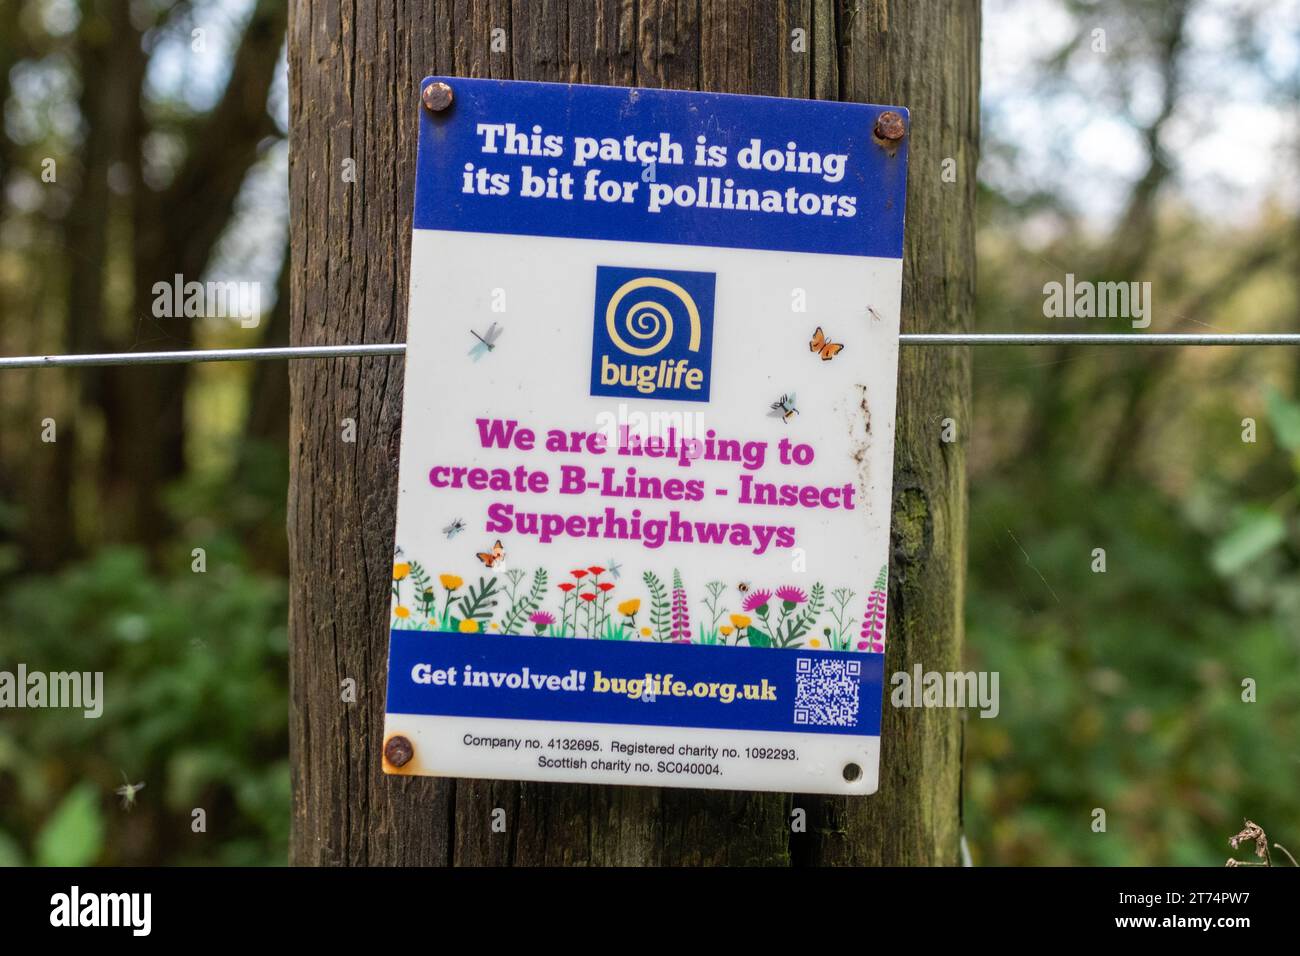 Nota Buglife in campagna che afferma che questa zona sta facendo la sua parte per gli impollinatori, stiamo contribuendo a creare linee B, autostrade per insetti, Inghilterra, Regno Unito Foto Stock